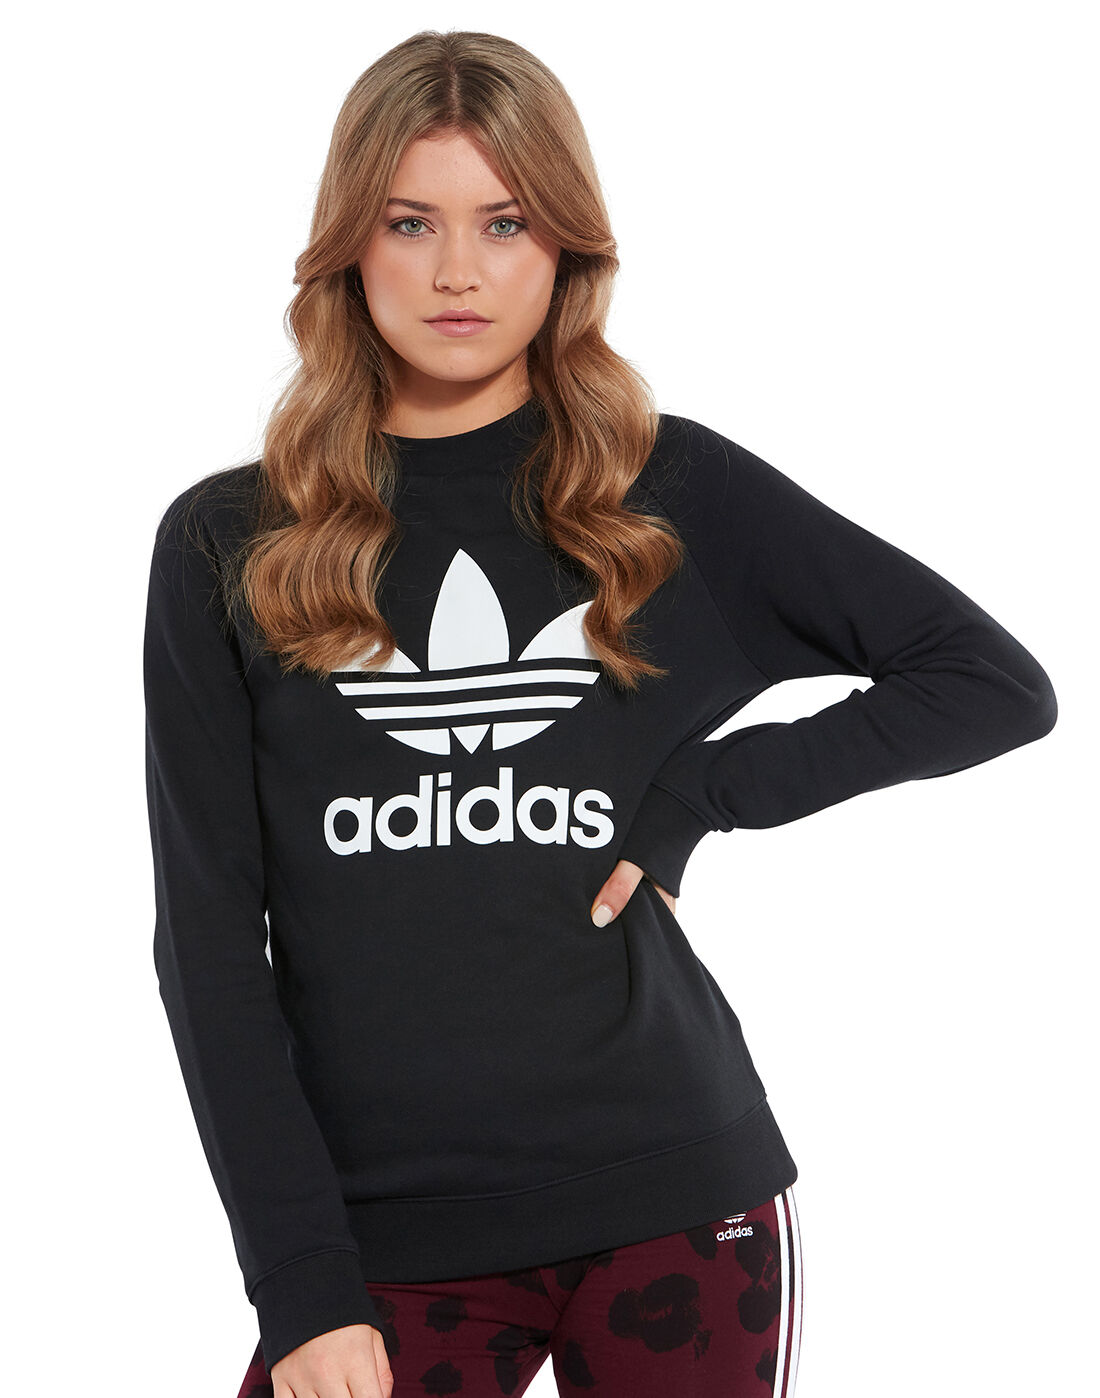 adidas originals women's trefoil crew sweatshirt